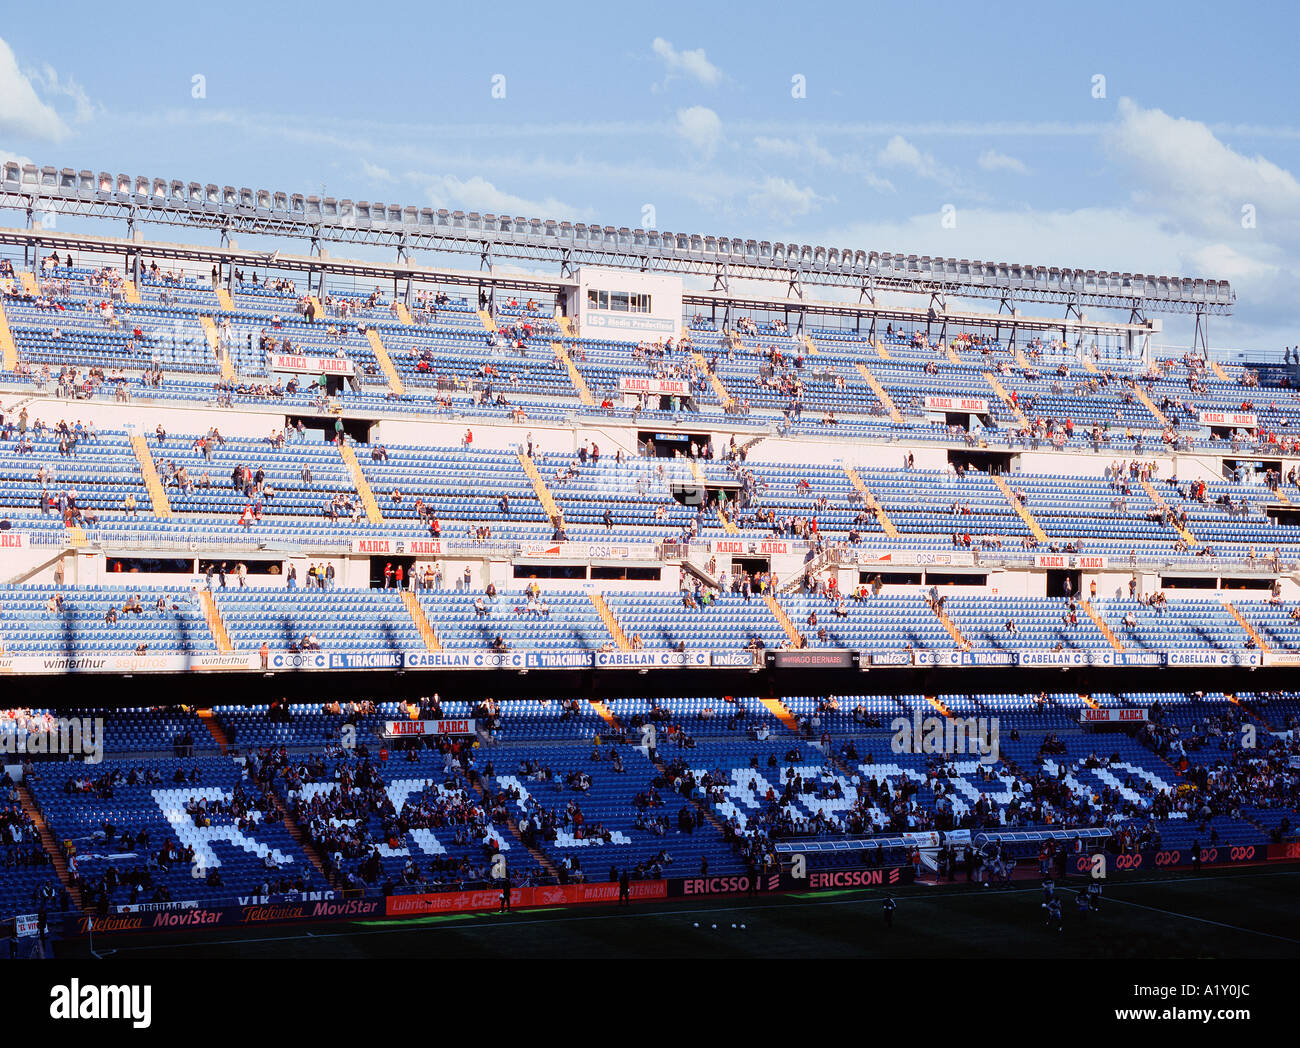 El estadio 'Santiago Bernabeu' en Madrid, España. Foto de stock